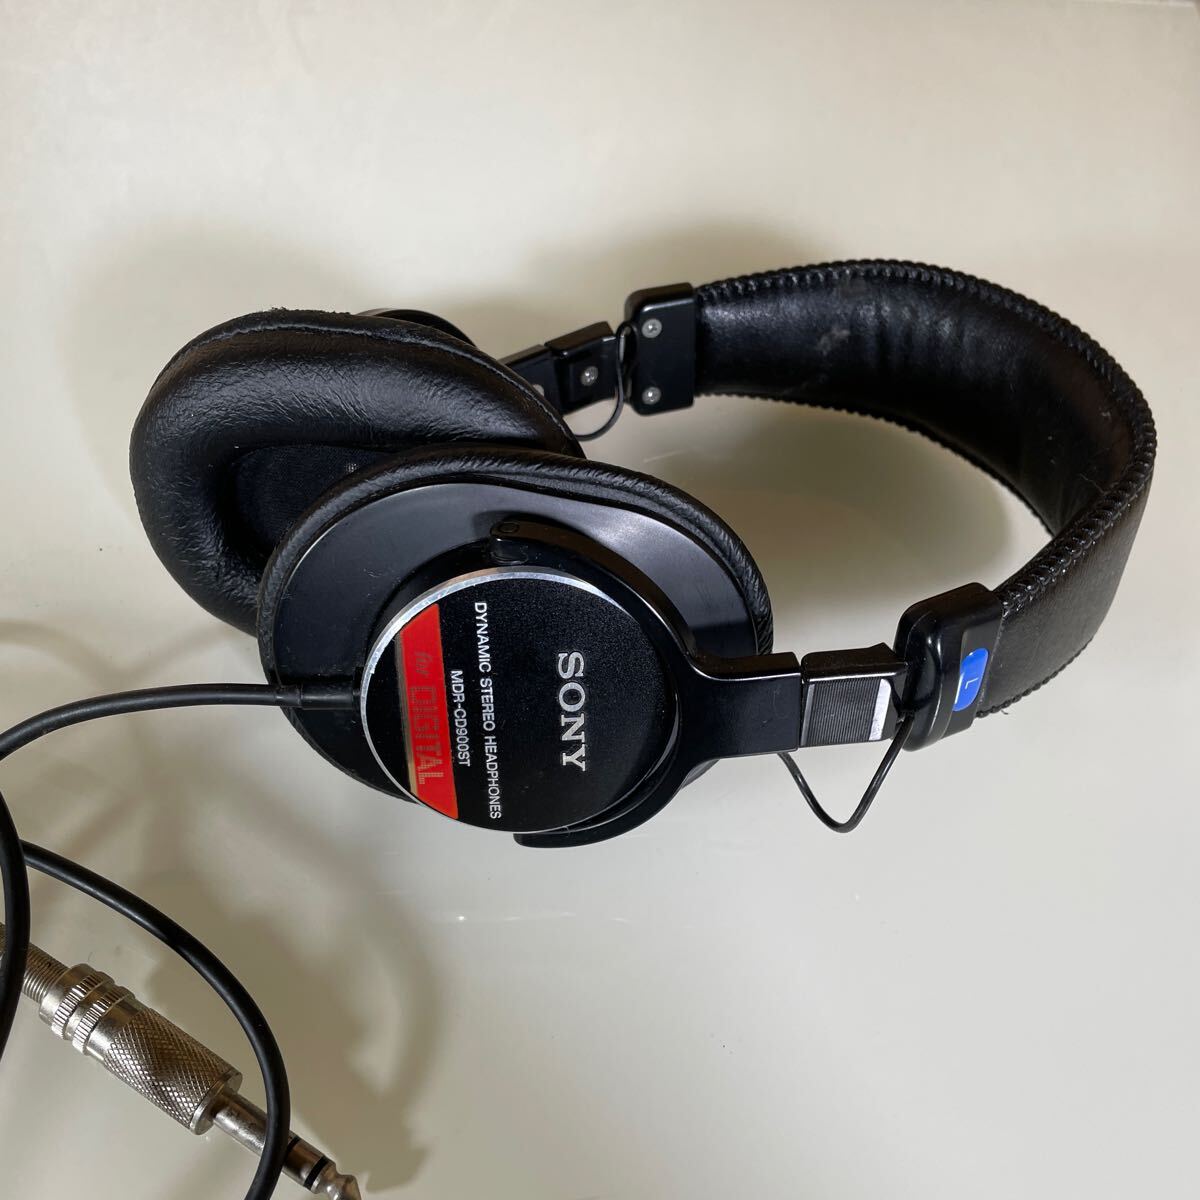 SONY Sony наушники наушники проводной воздухо-непроницаемый type Studio монитор наушники чёрный MDR-CD900ST электрогитара основа музыка 